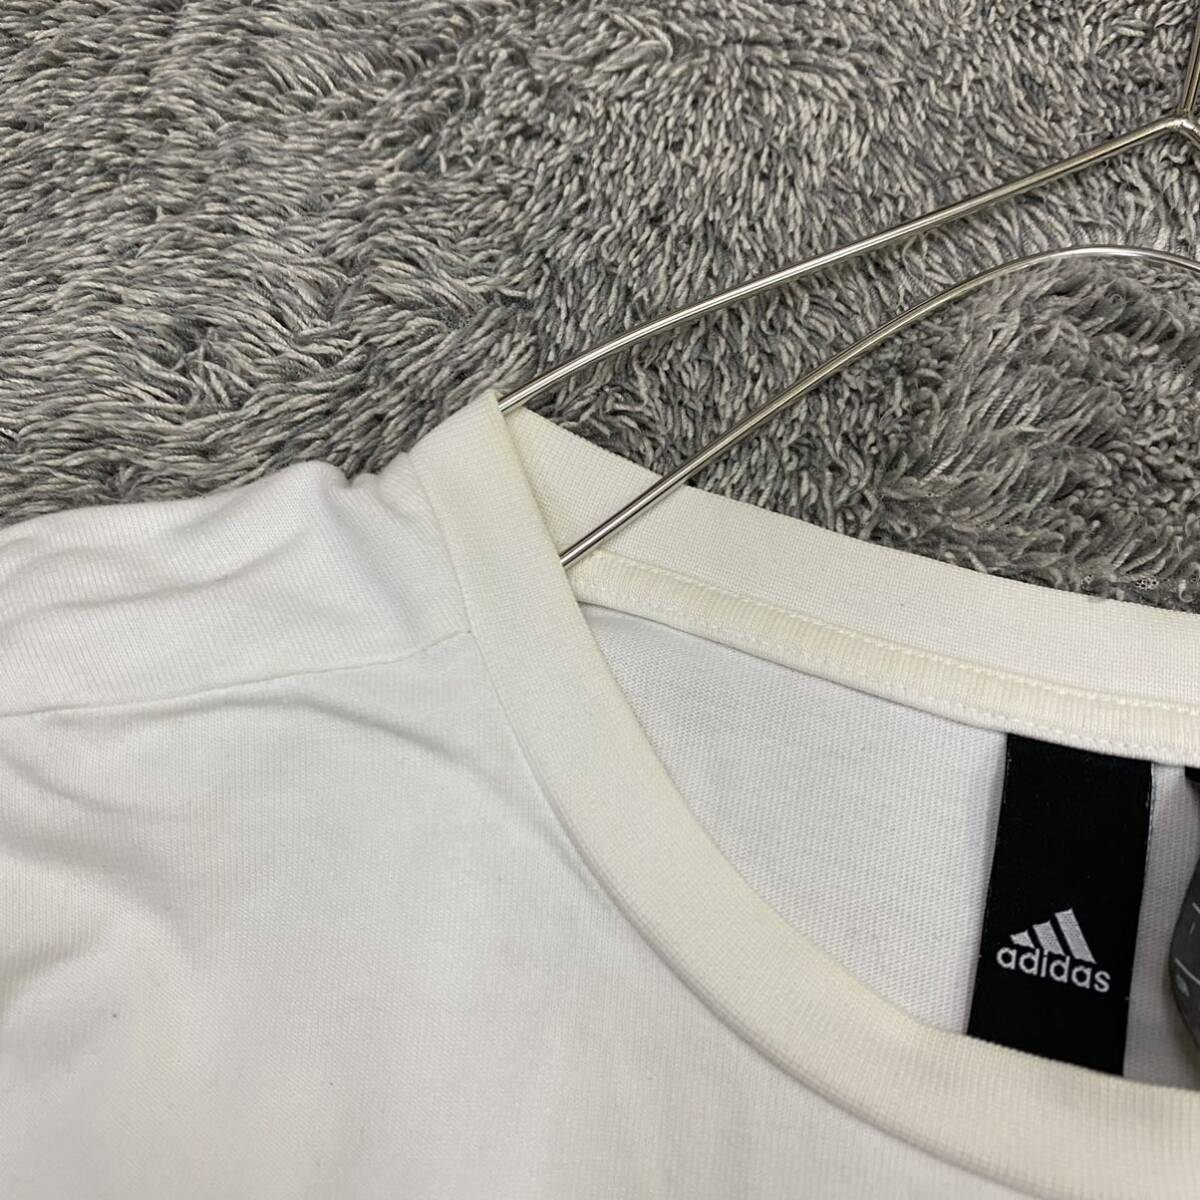 adidas アディダス Tシャツ 半袖カットソー サイズS ホワイト 白 メンズ トップス 最落なし （Q19）_画像8